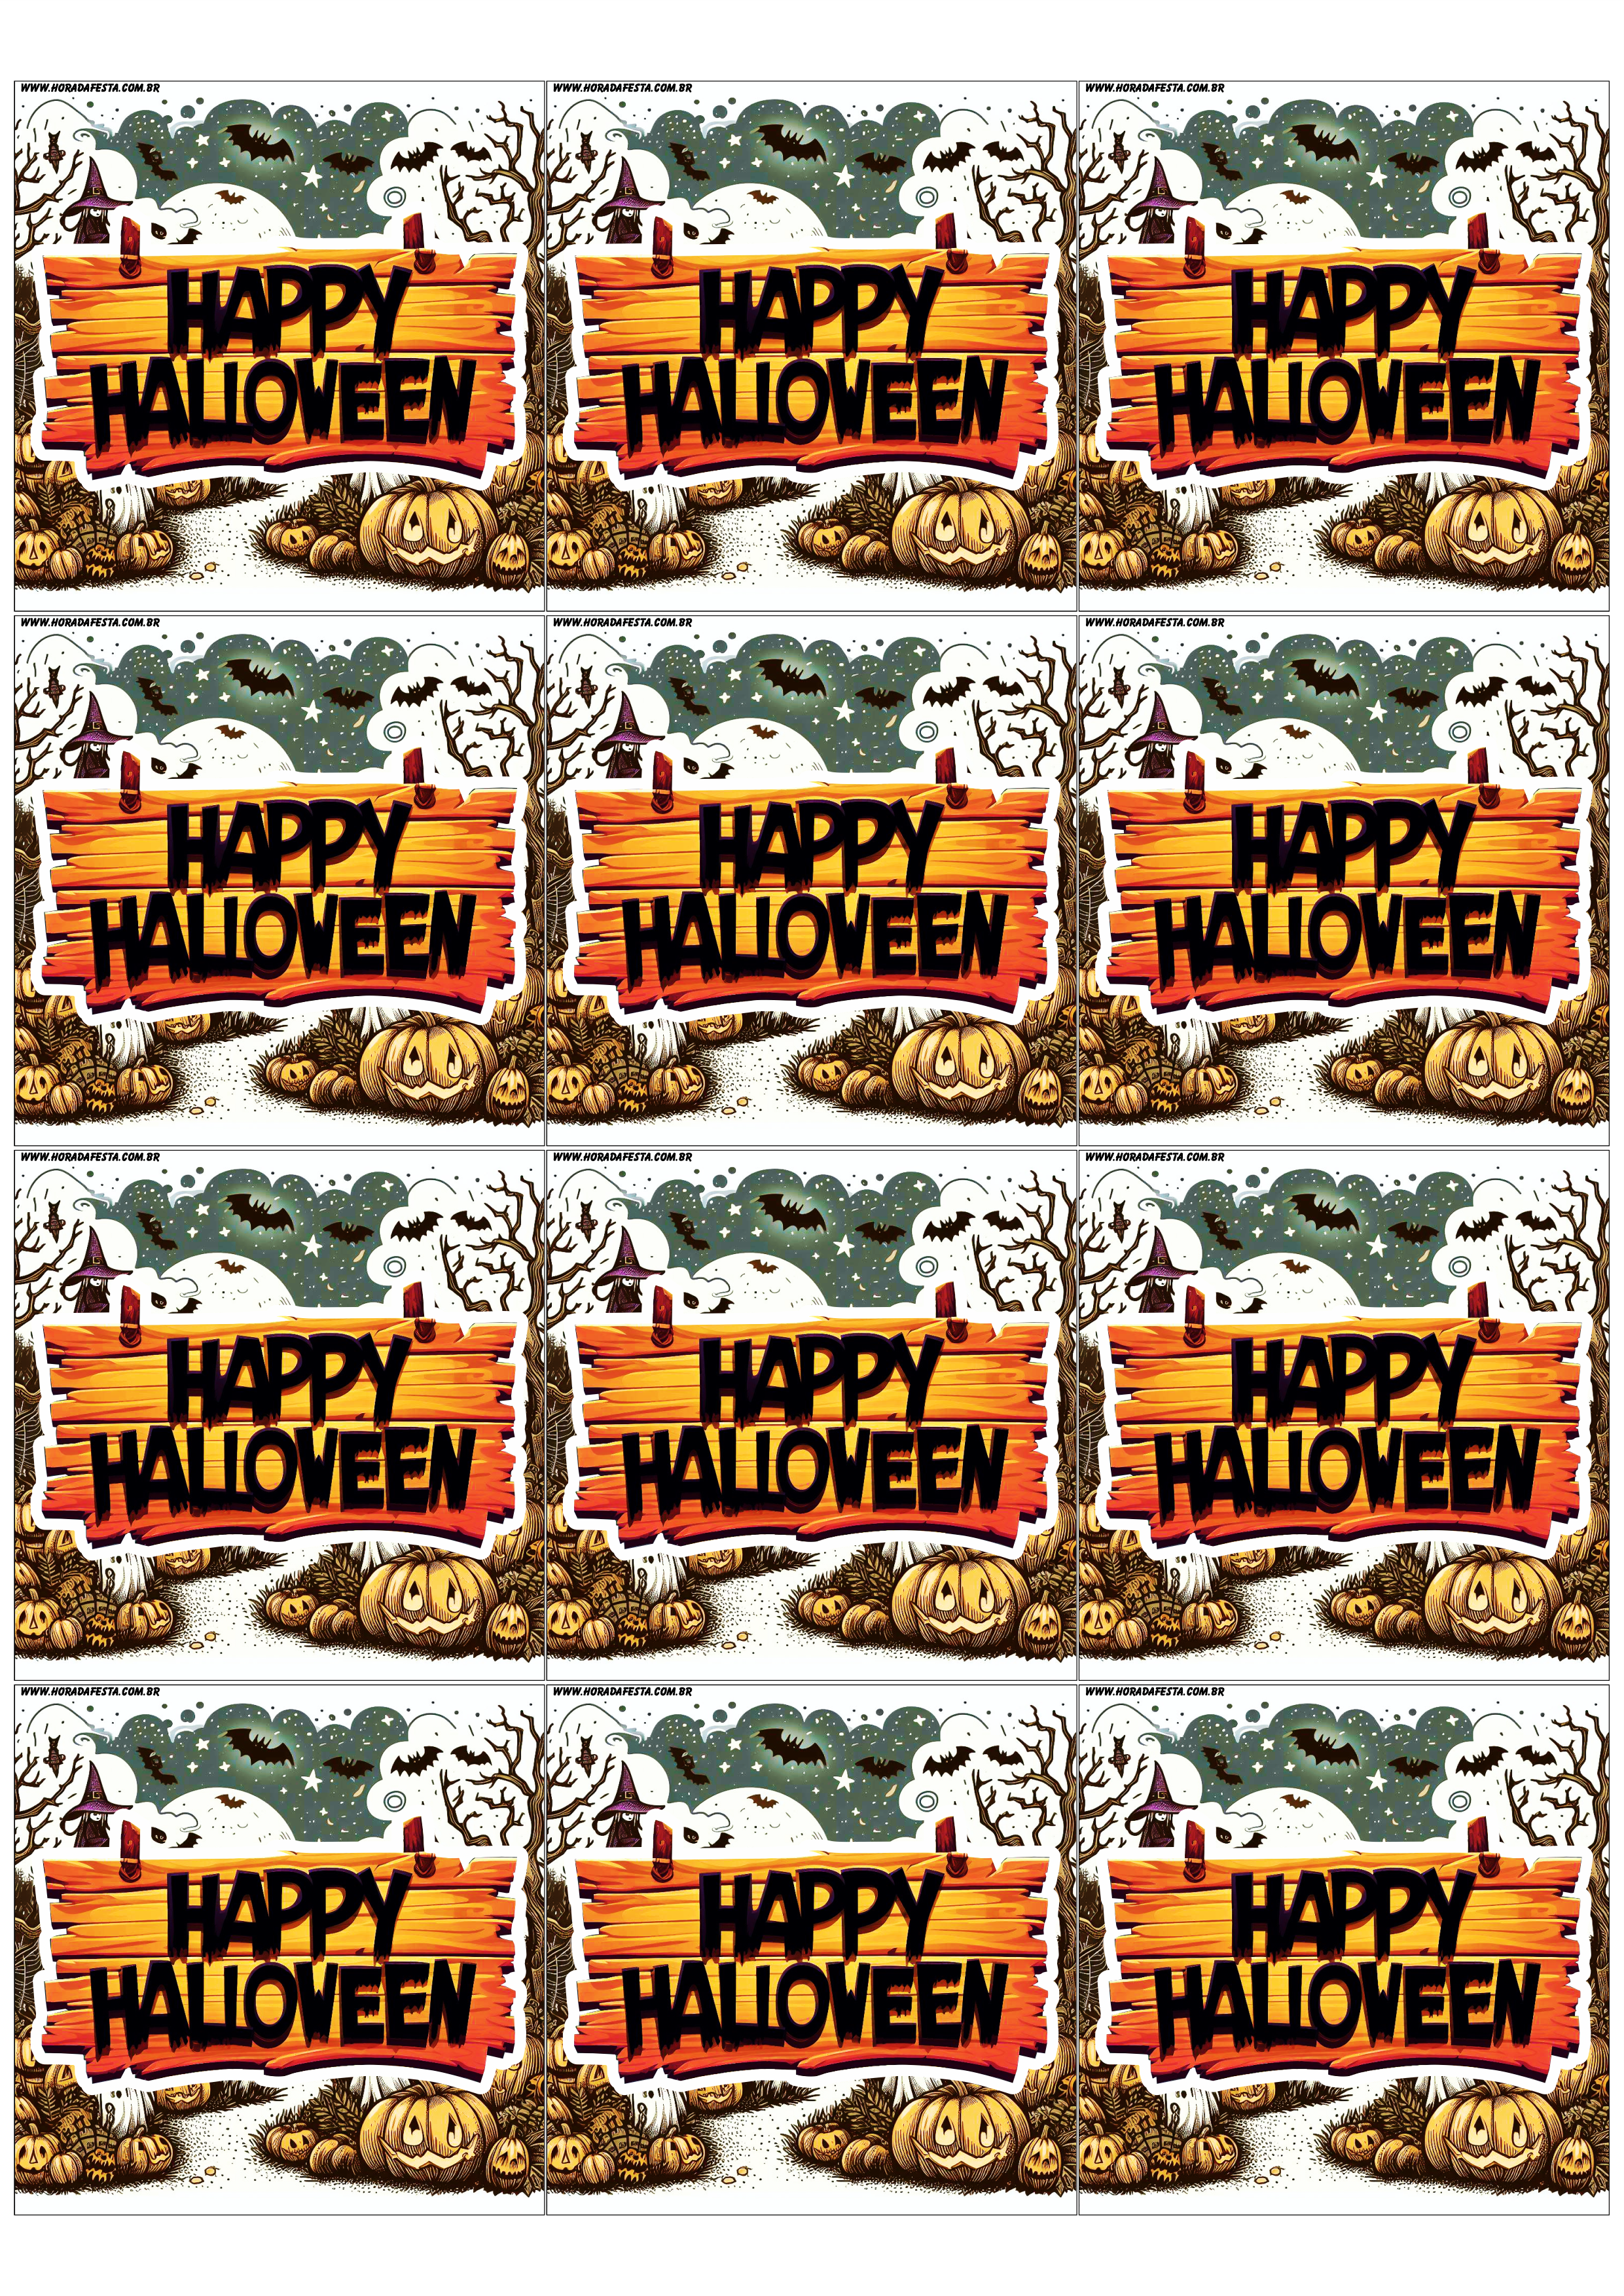 Happy Halloween adesivo tag sticker painel decoração grátis de festa artigos de papelaria design 12 imagens png